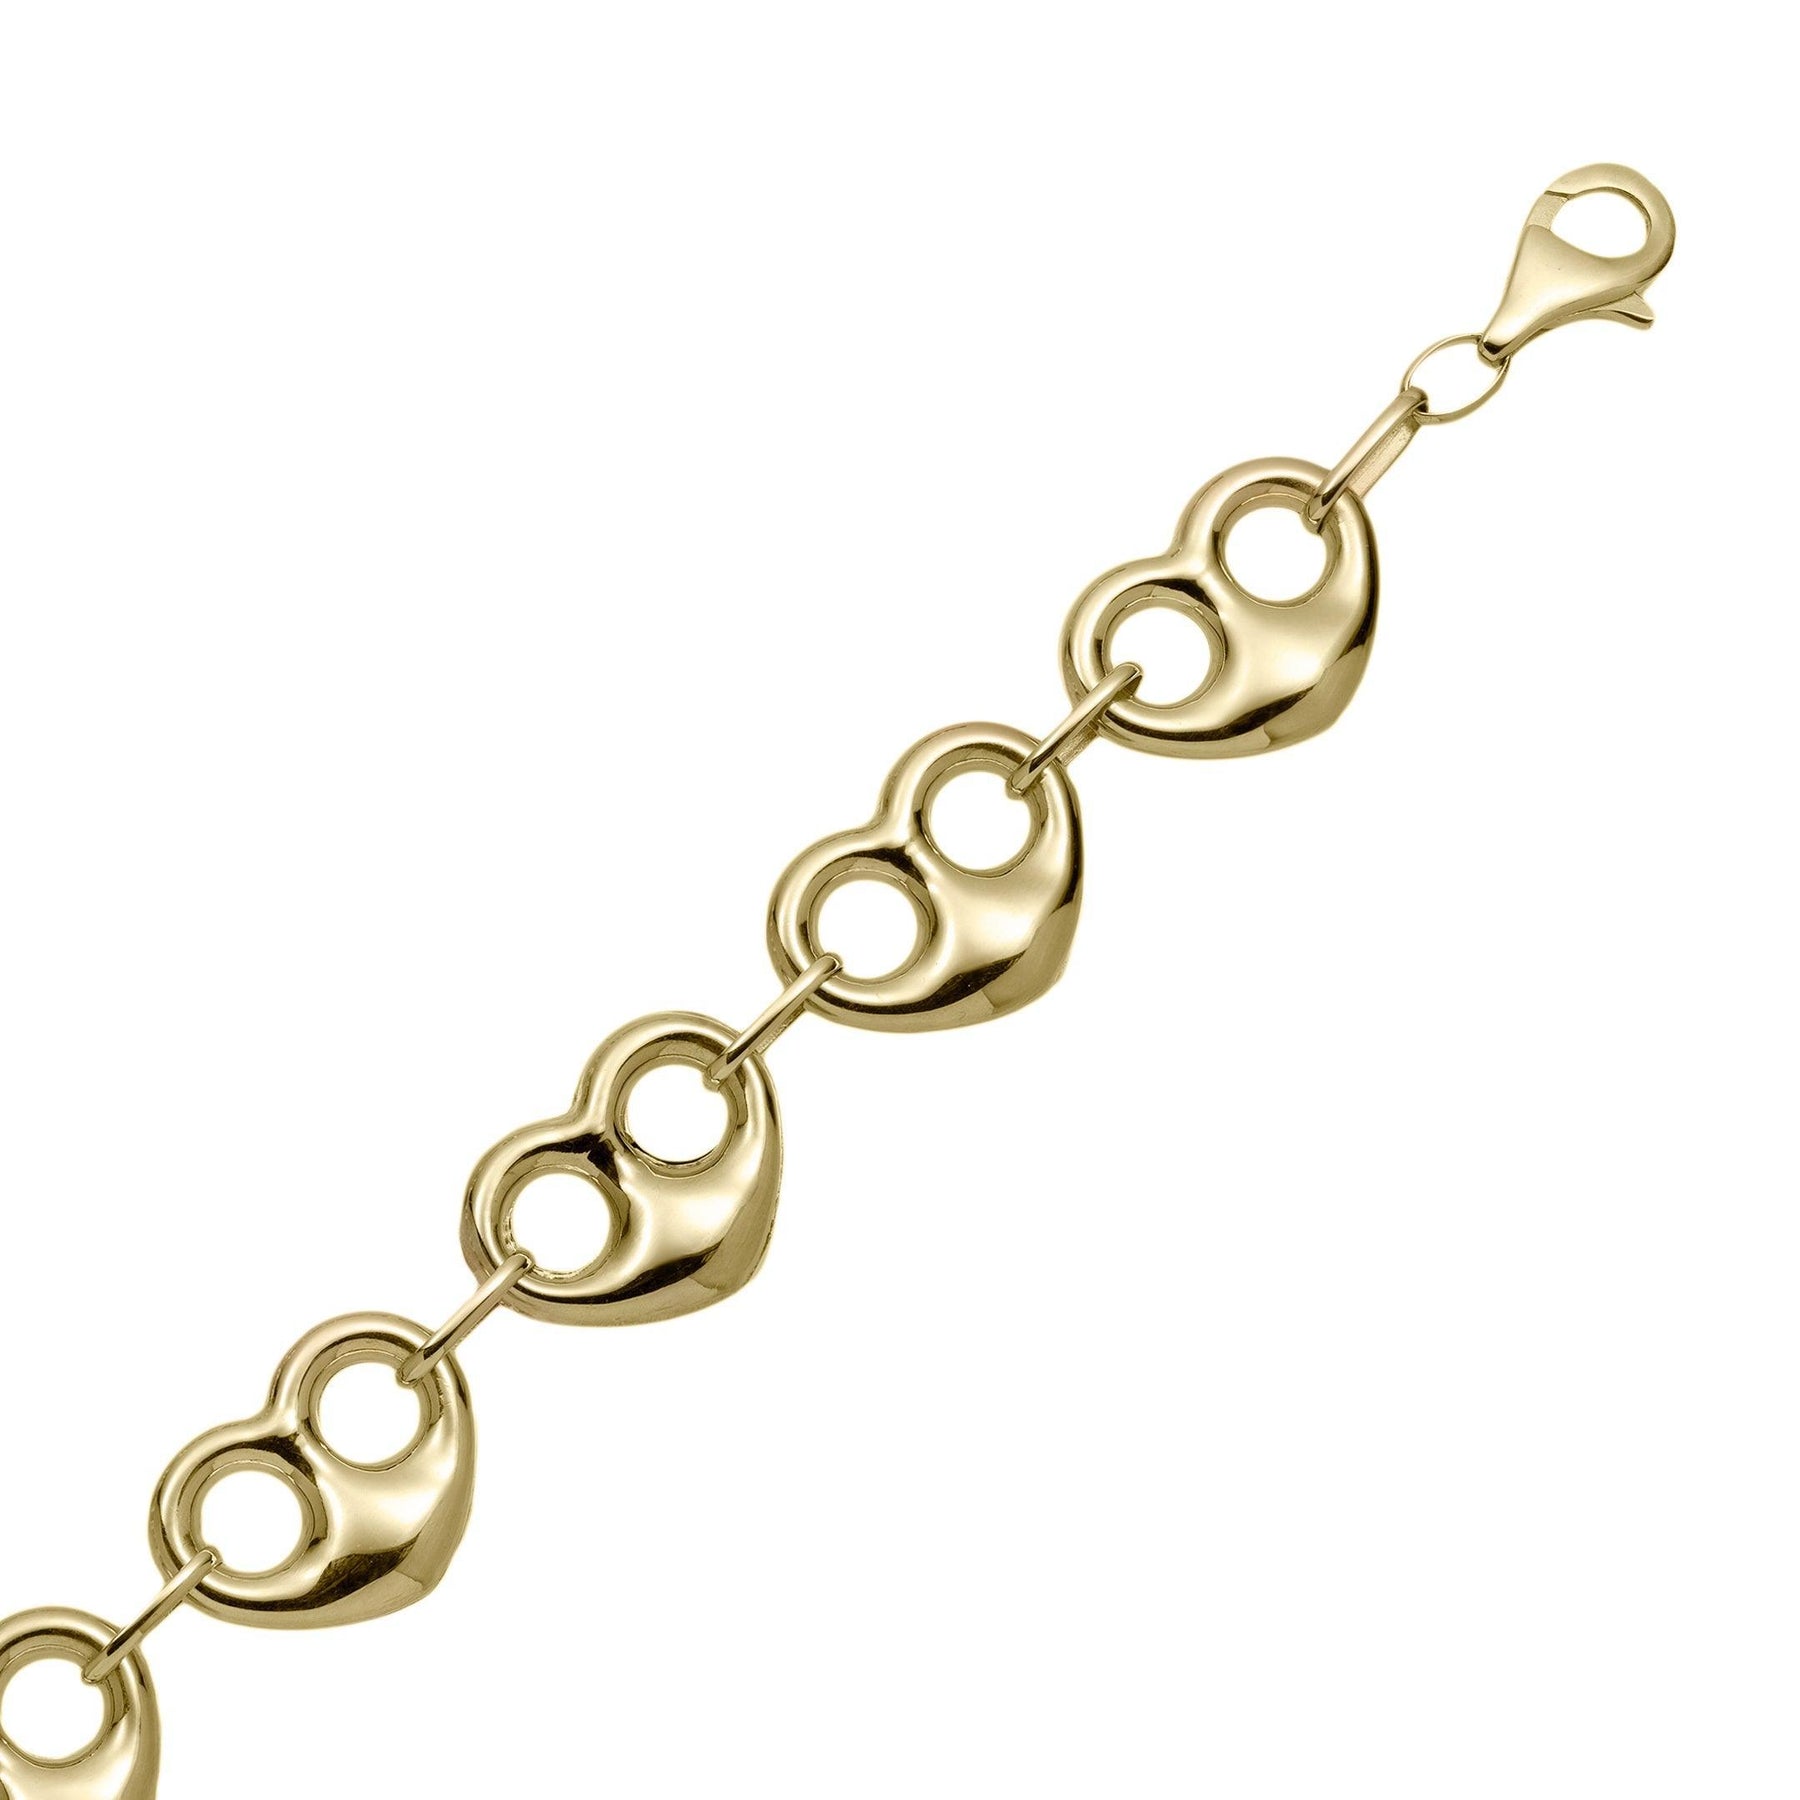 10mm Puffy Heart 10K Yellow Gold Heart Link Bracelet | eBay